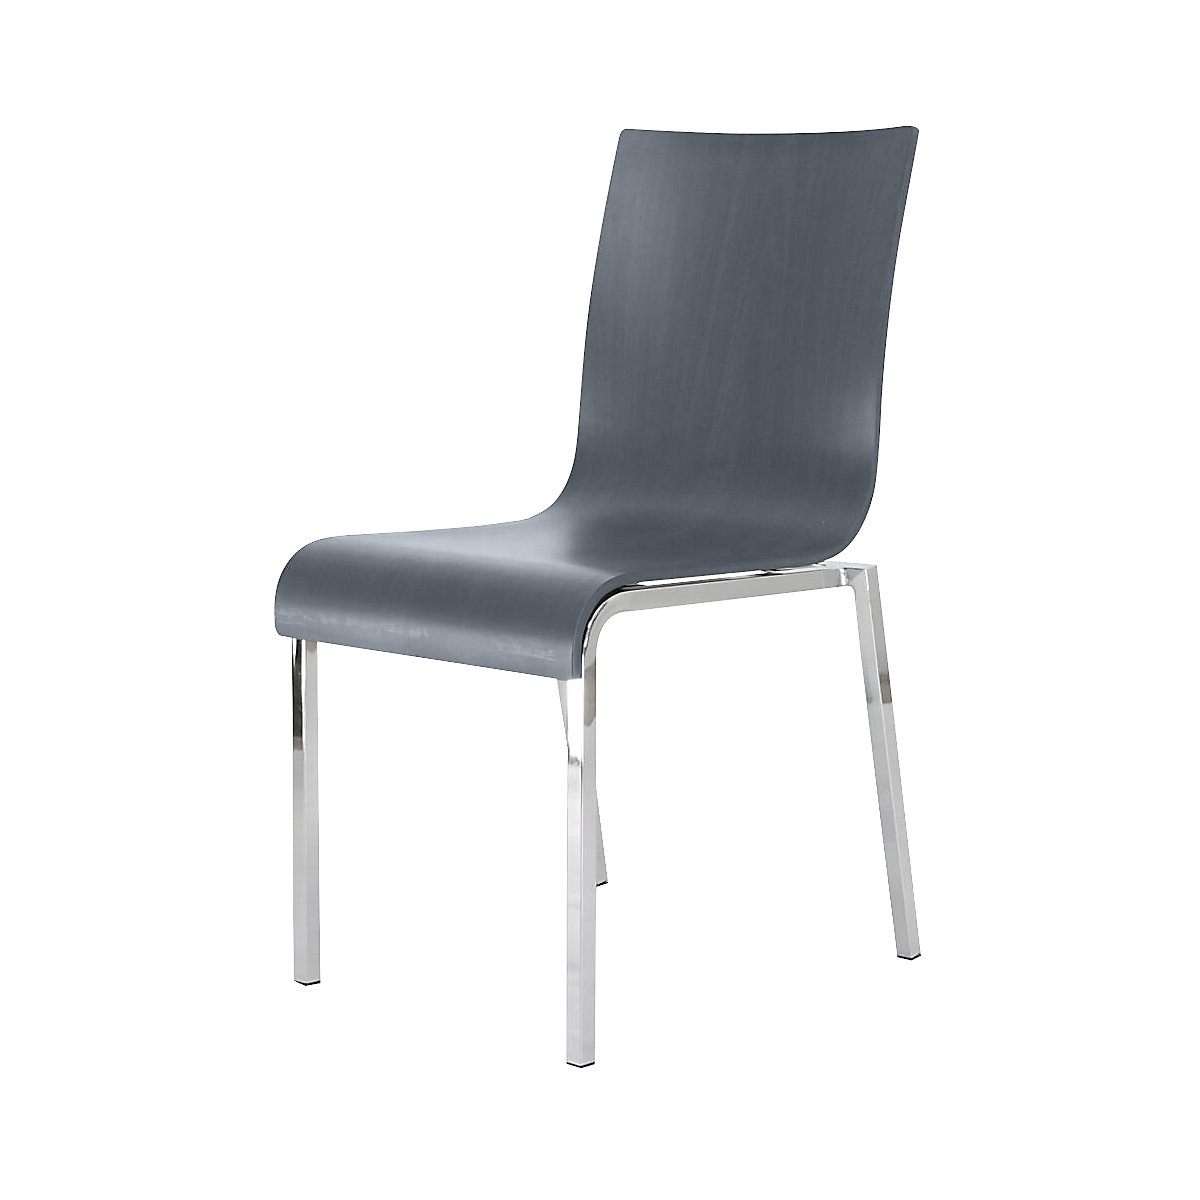 Cadeira de madeira em forma de concha CUBIC, AxLxP 860 x 450 x 520 mm, embalagem de 4 unid., concha antracite